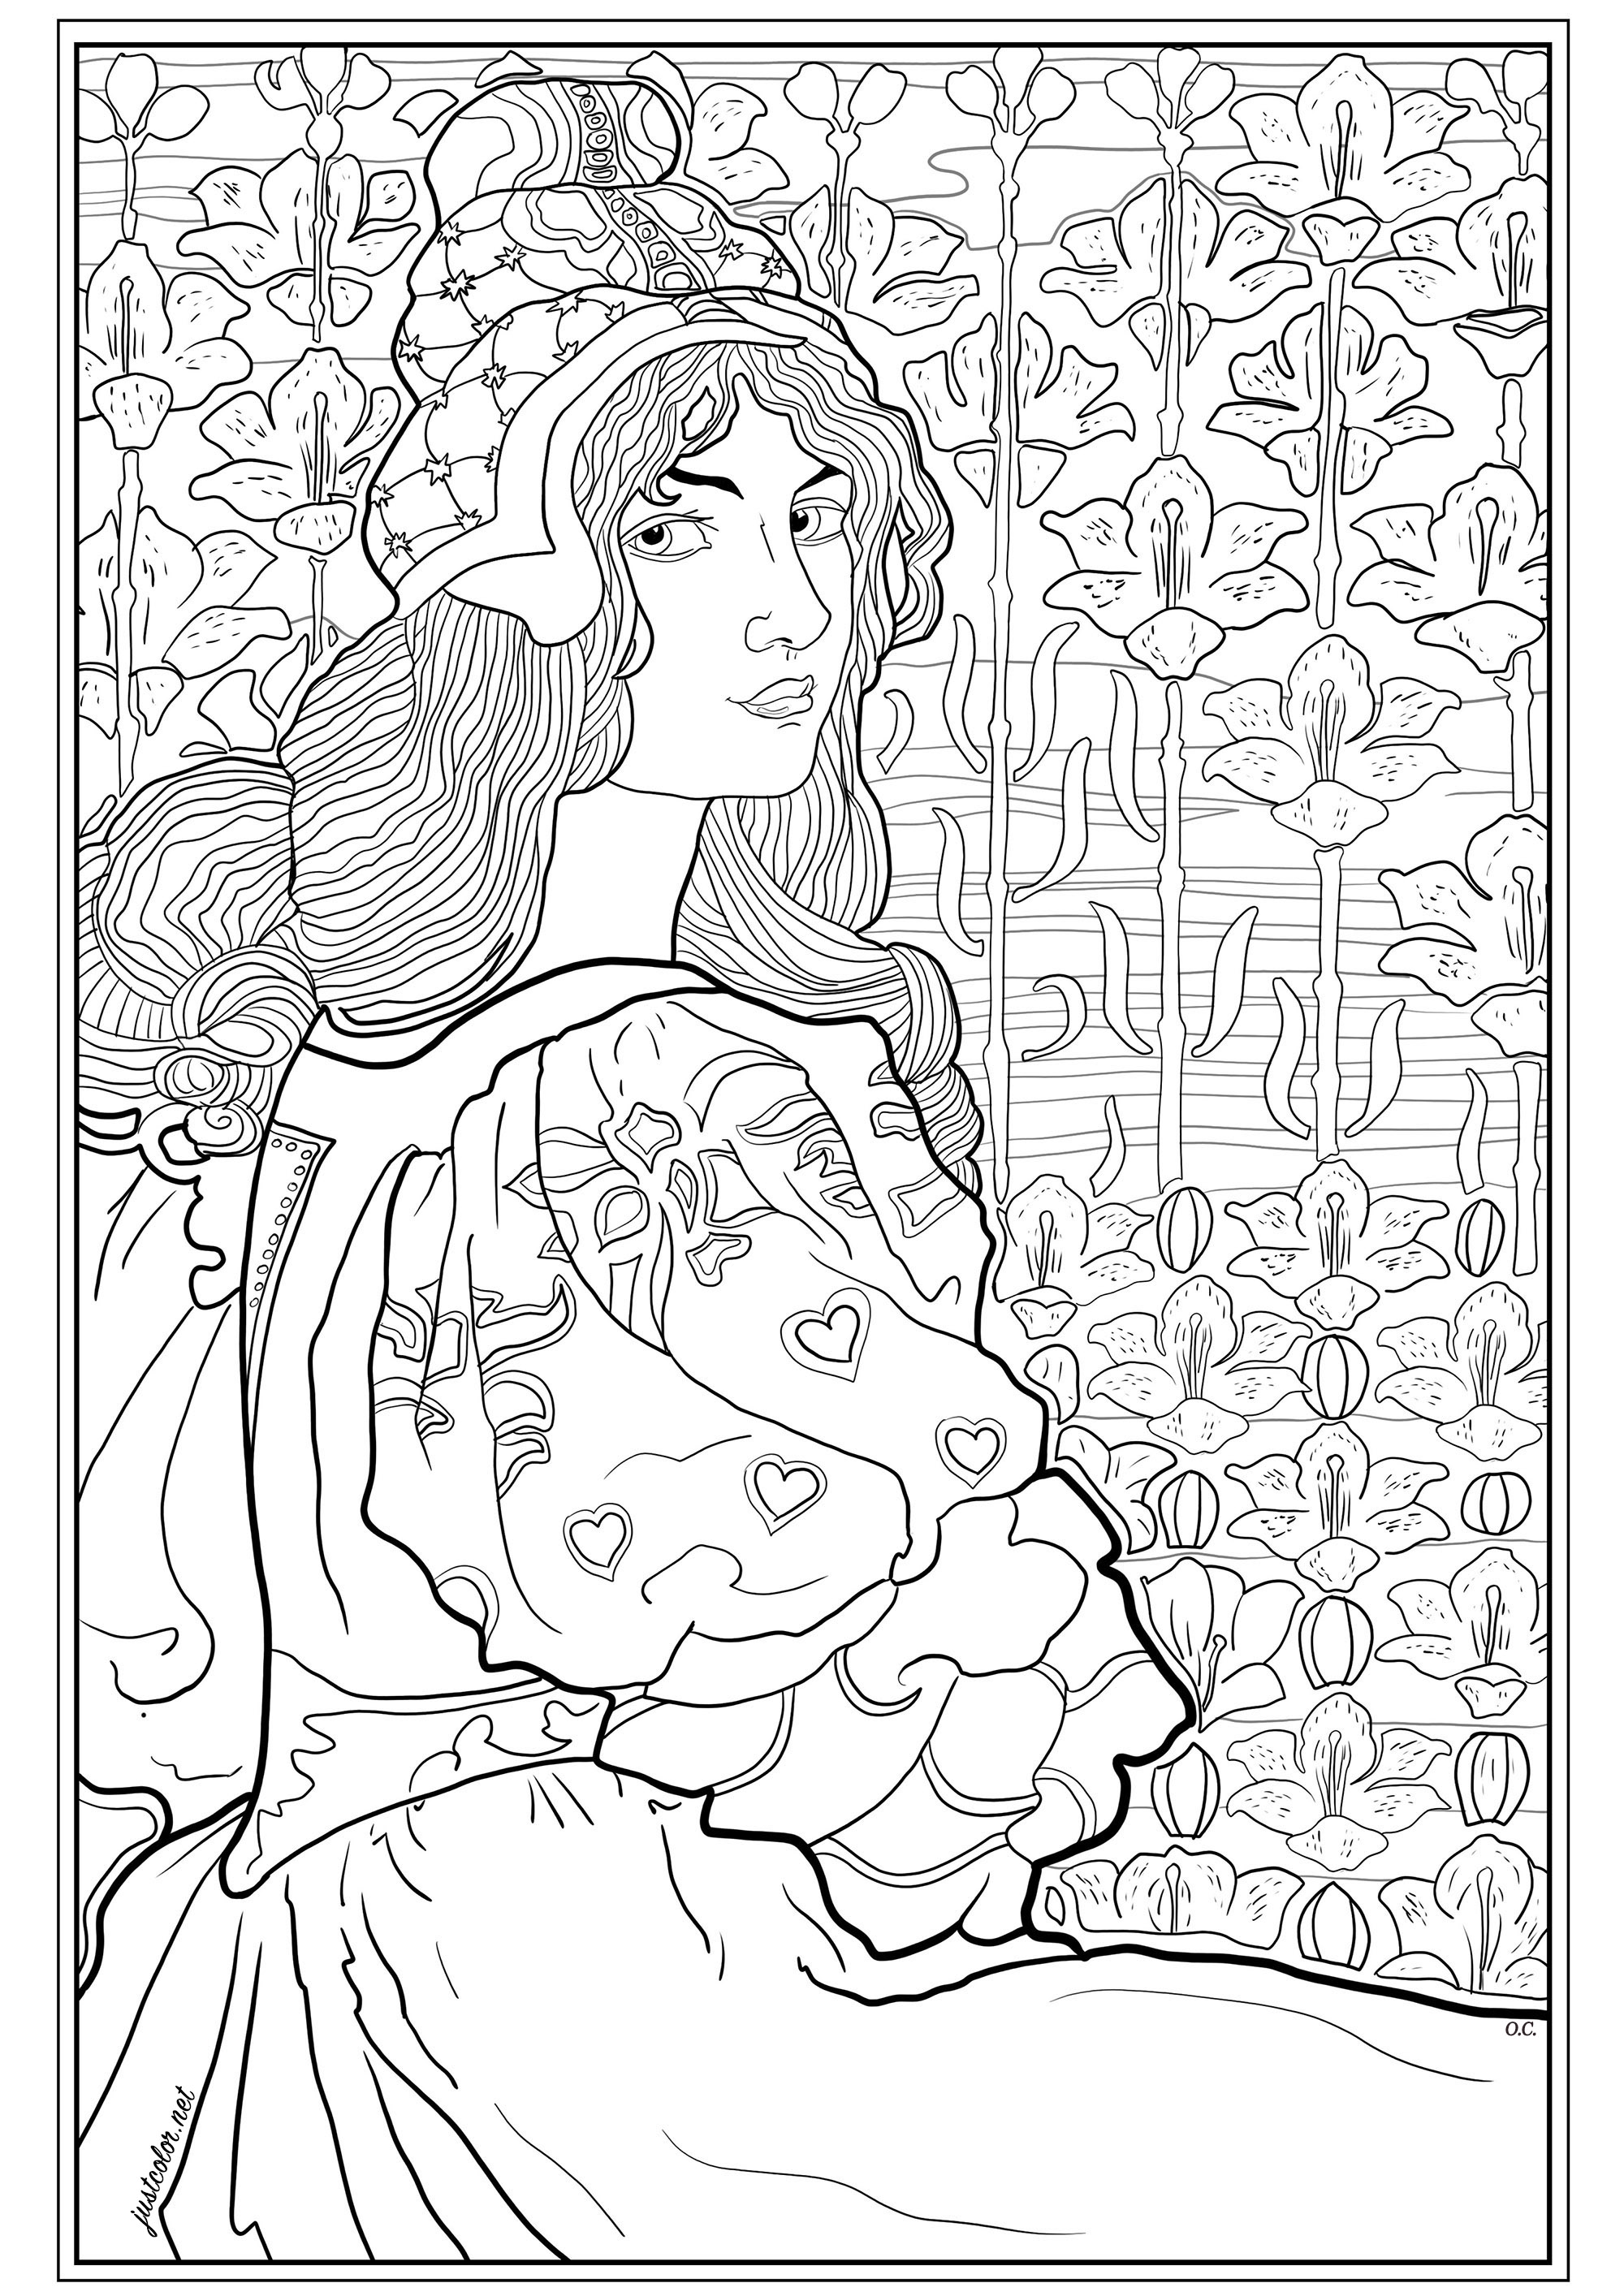 Coloriage créé à partir d'une lithographie originale de Louis Rhead (1898), éditée pour les cahiers de L'Estampe Moderne. Cette illustration représente Jane, jeune femme à la longue chevelure, sur un fond de lis stylisés.